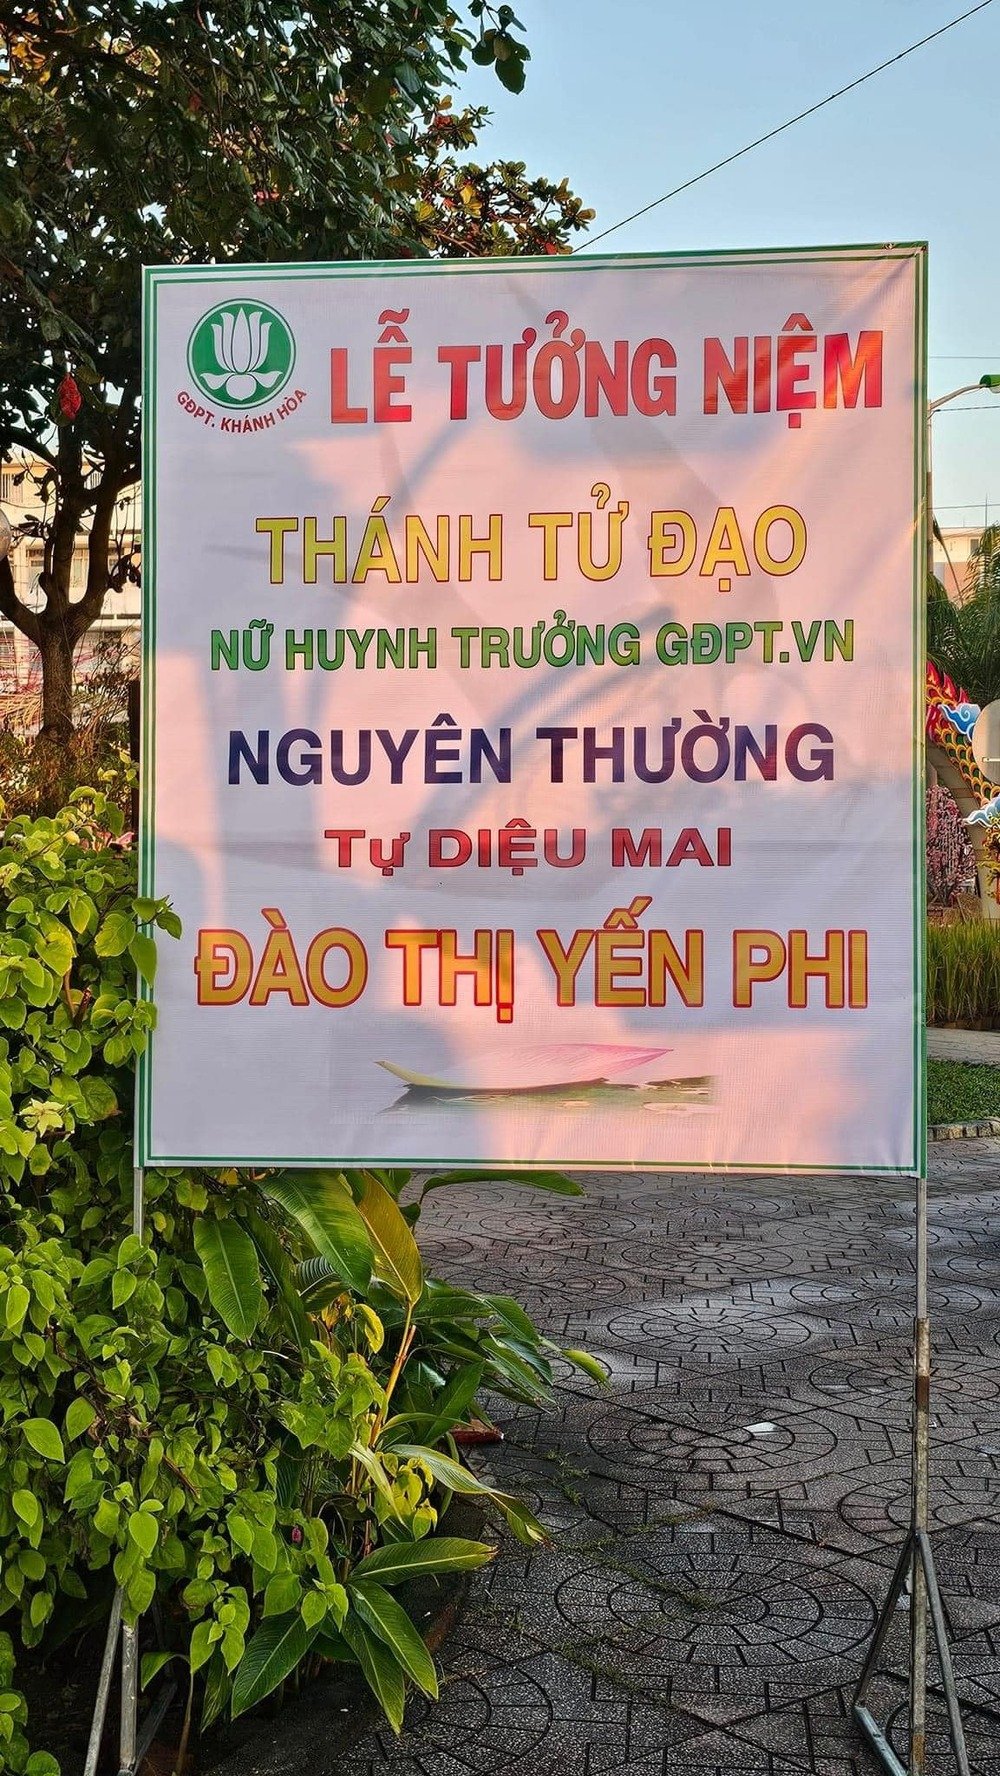 Dao Thi Yen Phi